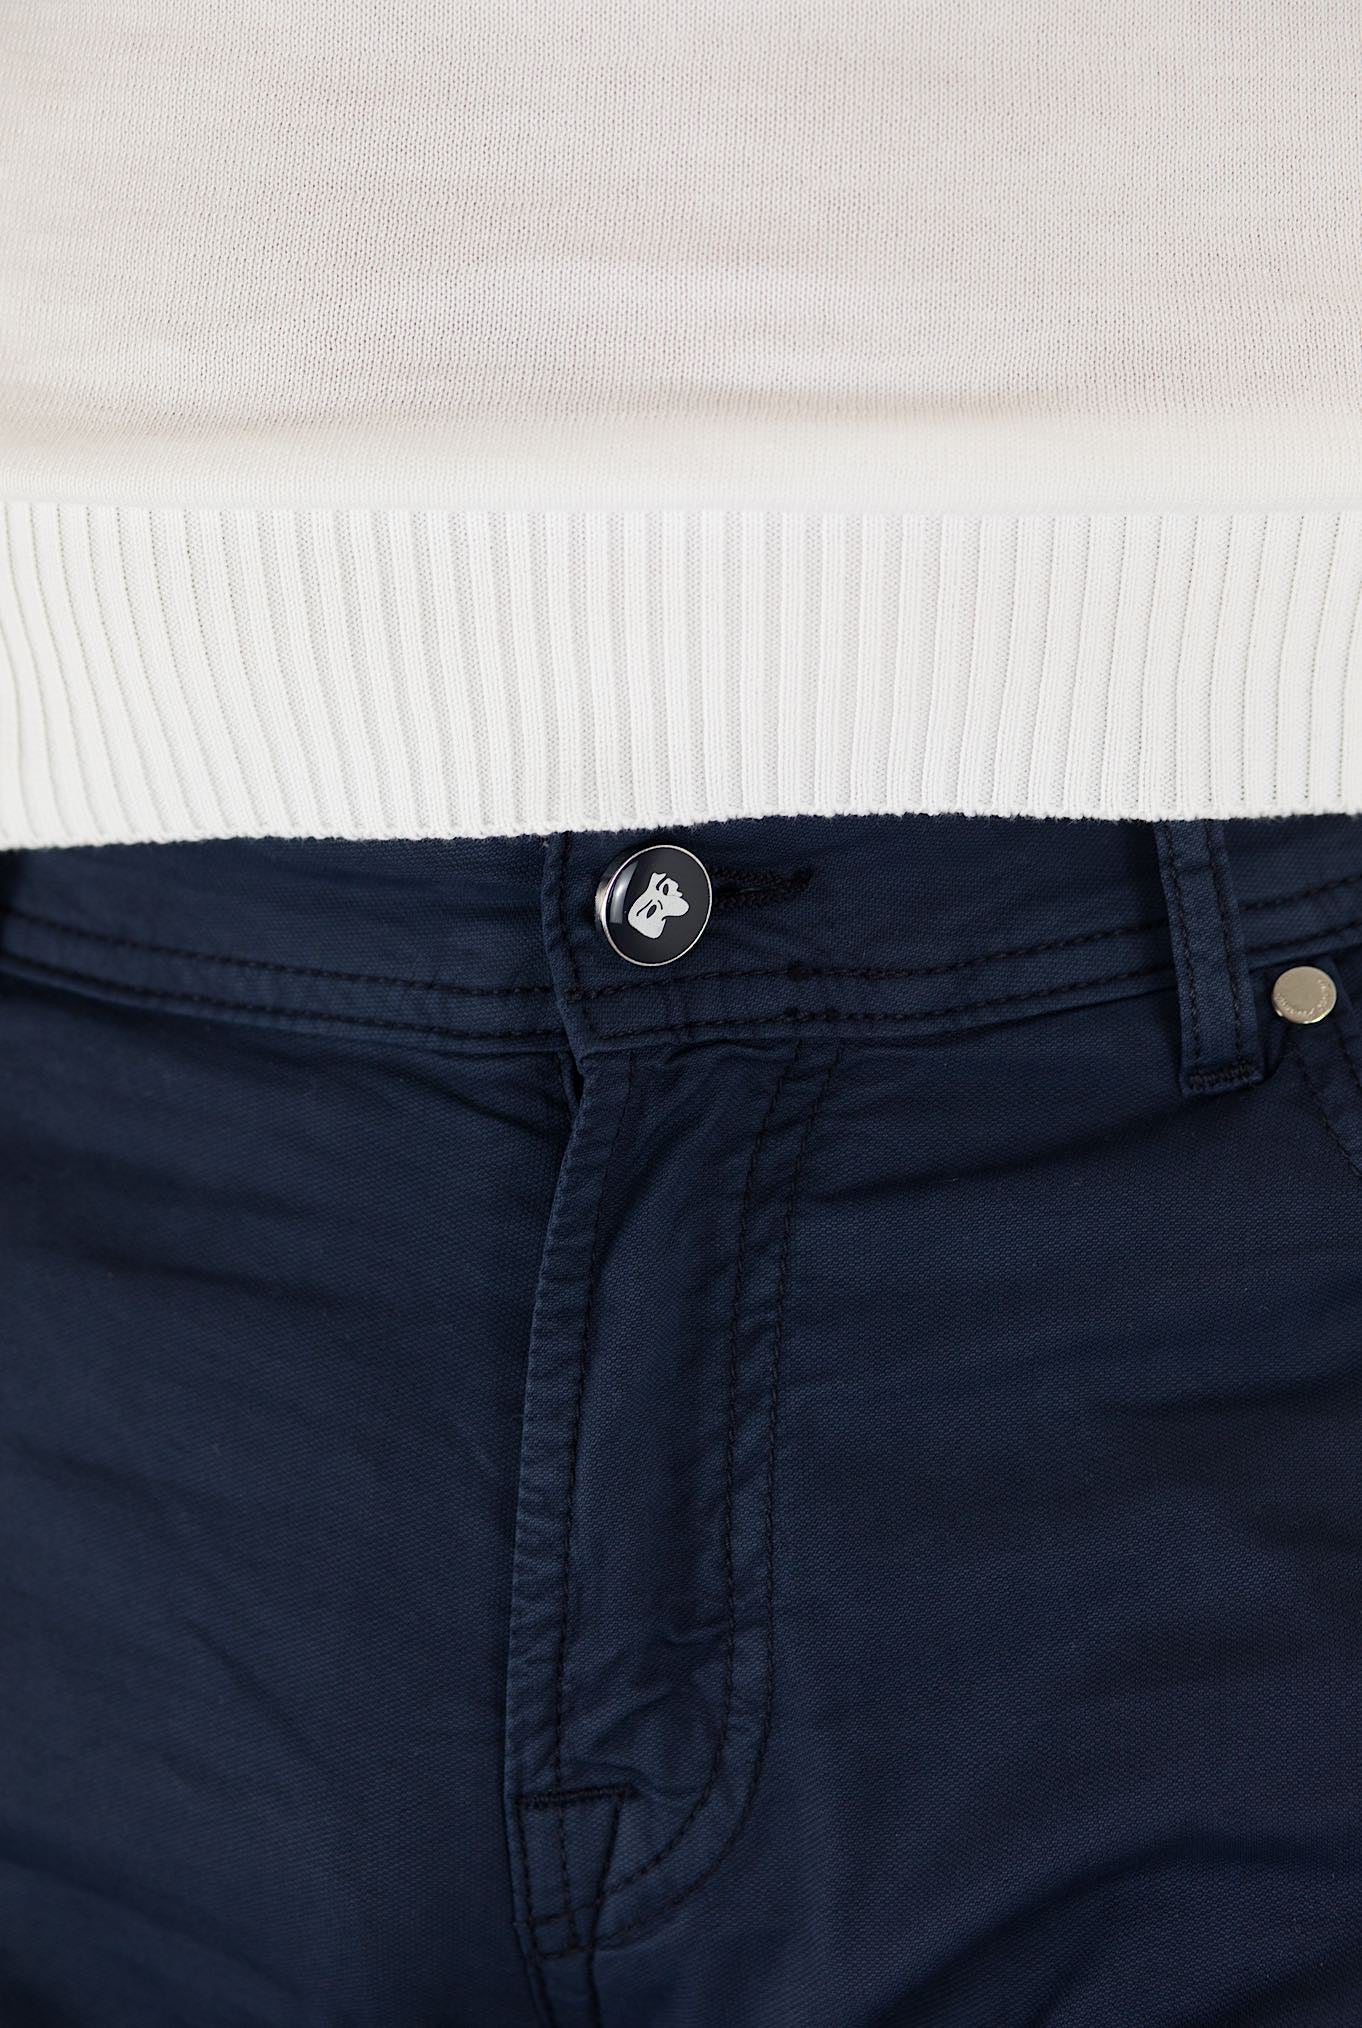 PESCAROLO 5 Pocket Trousers mod. Black Cotton Silk Navy Blue